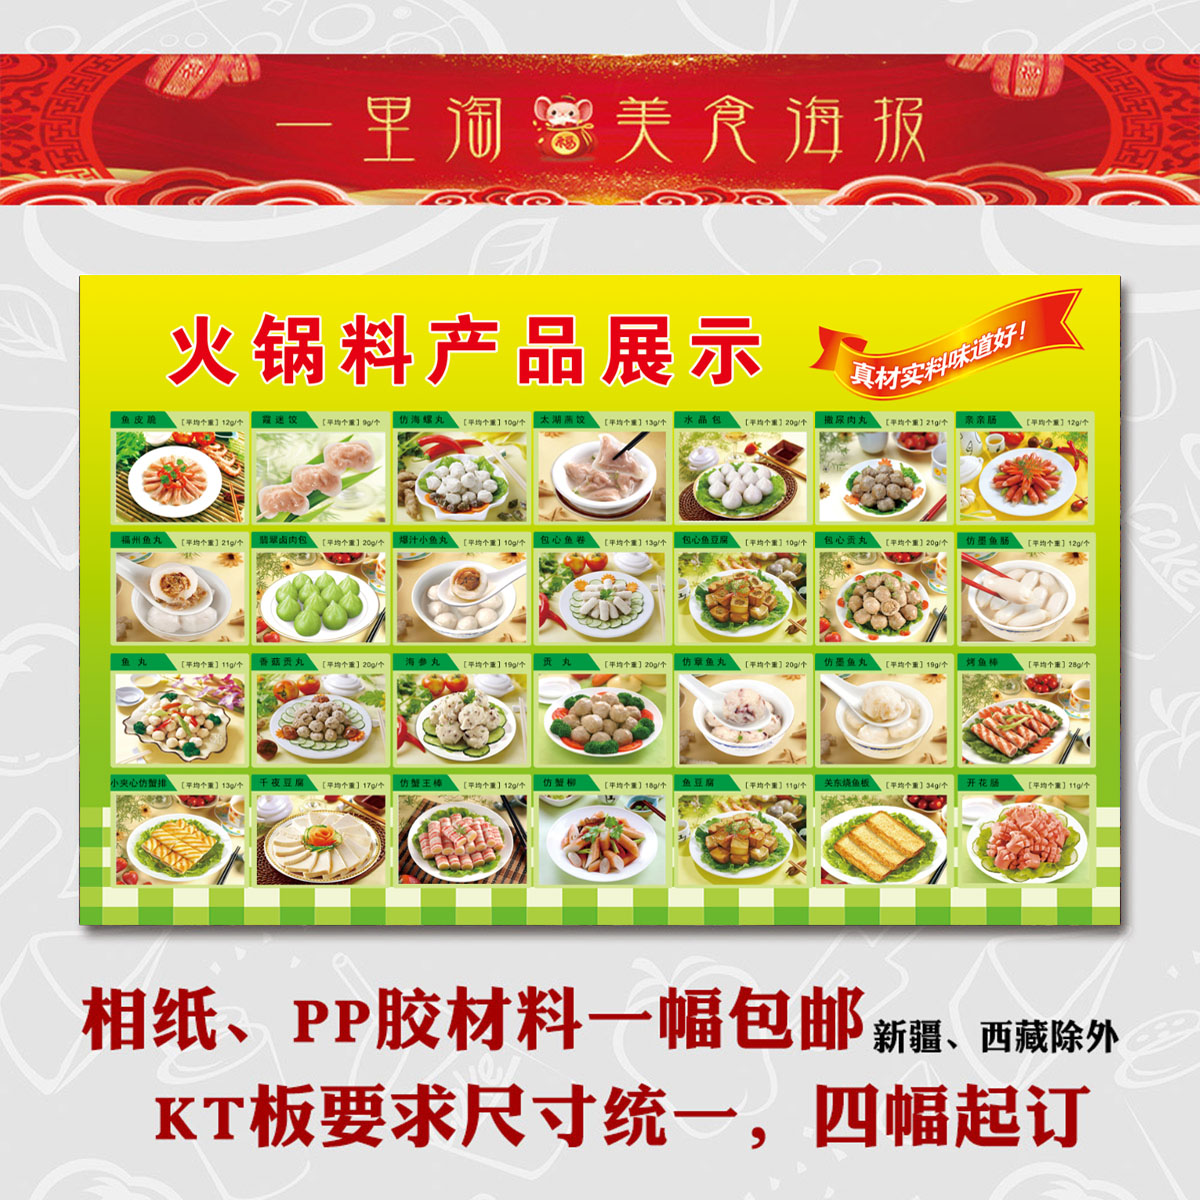 速冻火锅丸子 鸡腿贴纸贴画 食品海报广告画 海鲜丸子火锅料